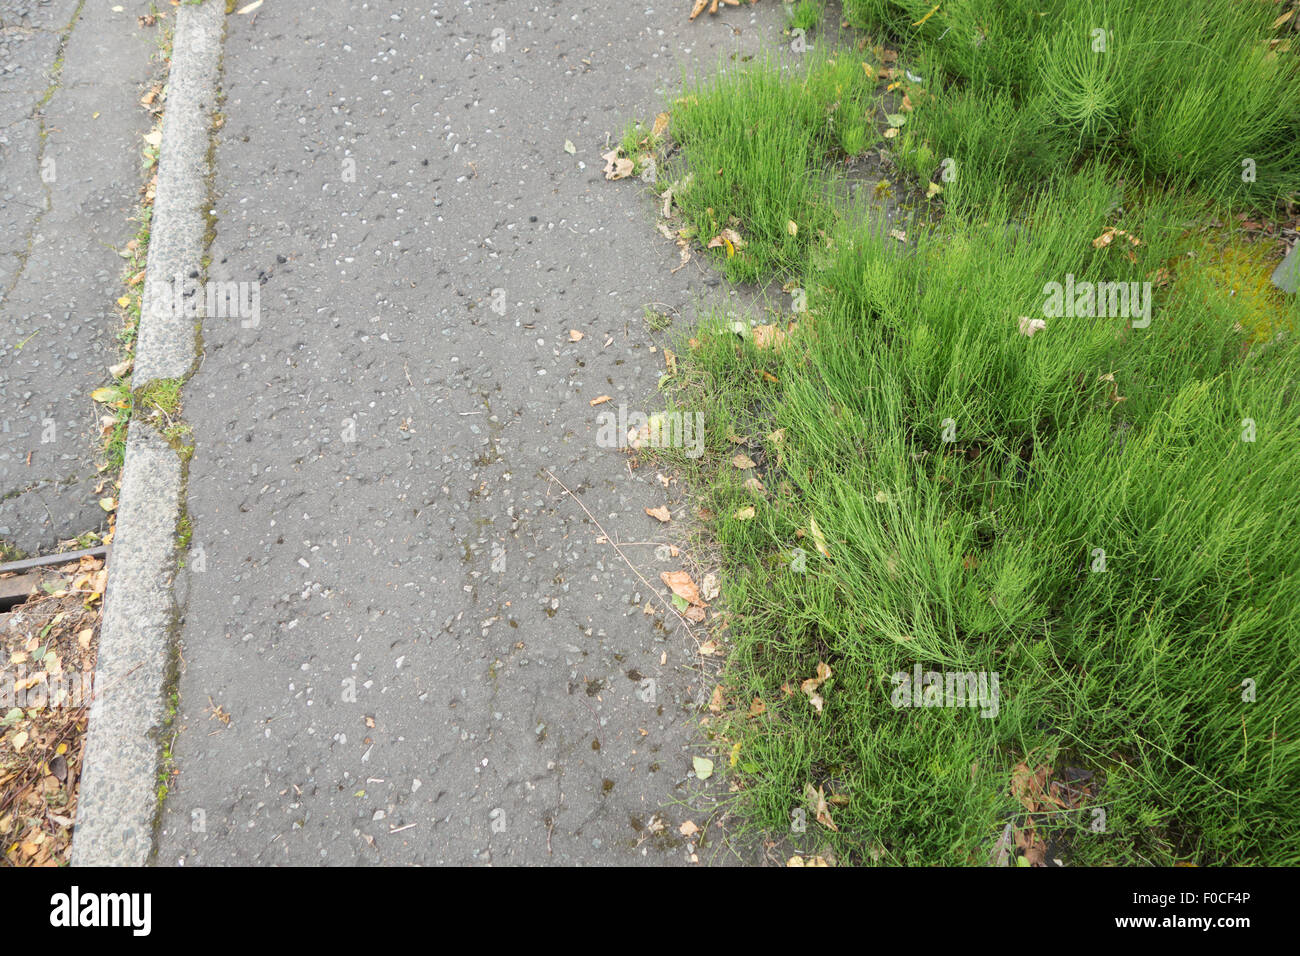 Schachtelhalm (Equisetum Arvense) - Feld, eine invasive und schwierig zu steuern mehrjährige Unkraut wächst durch einen öffentlichen Fußweg Stockfoto